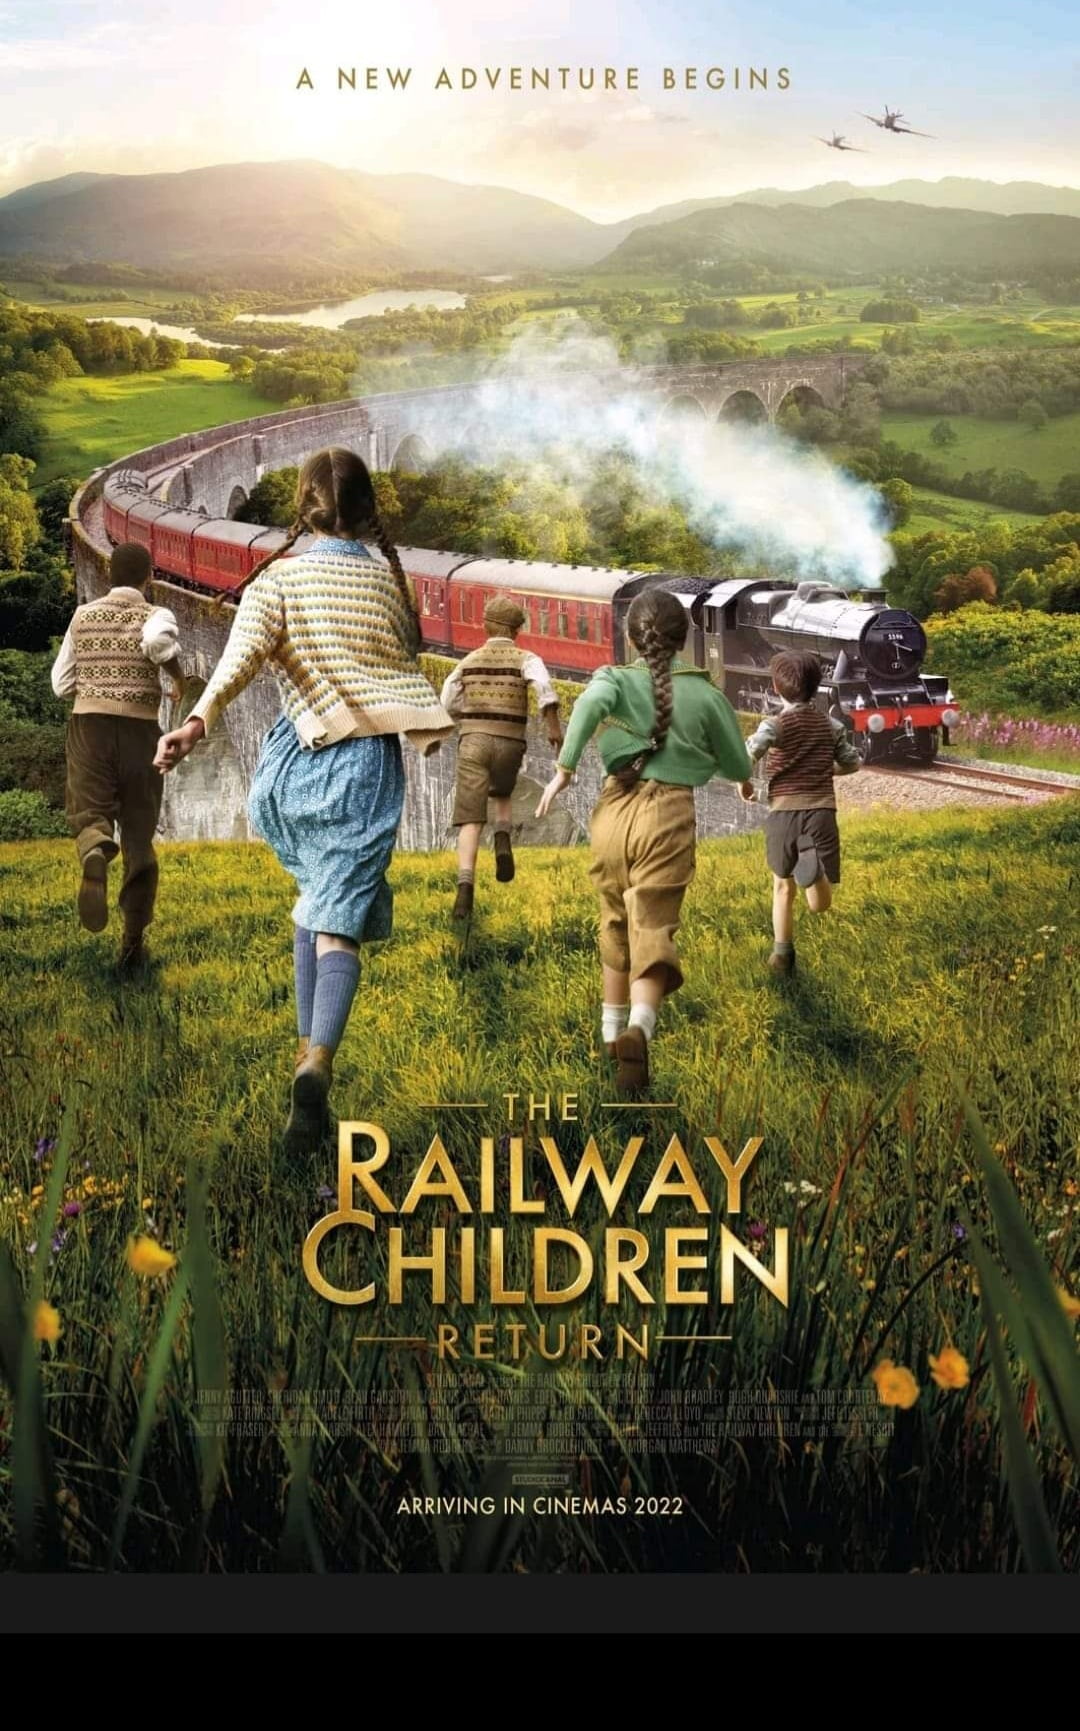  Railway Children Movie 2022, Official Trailer, Release Date